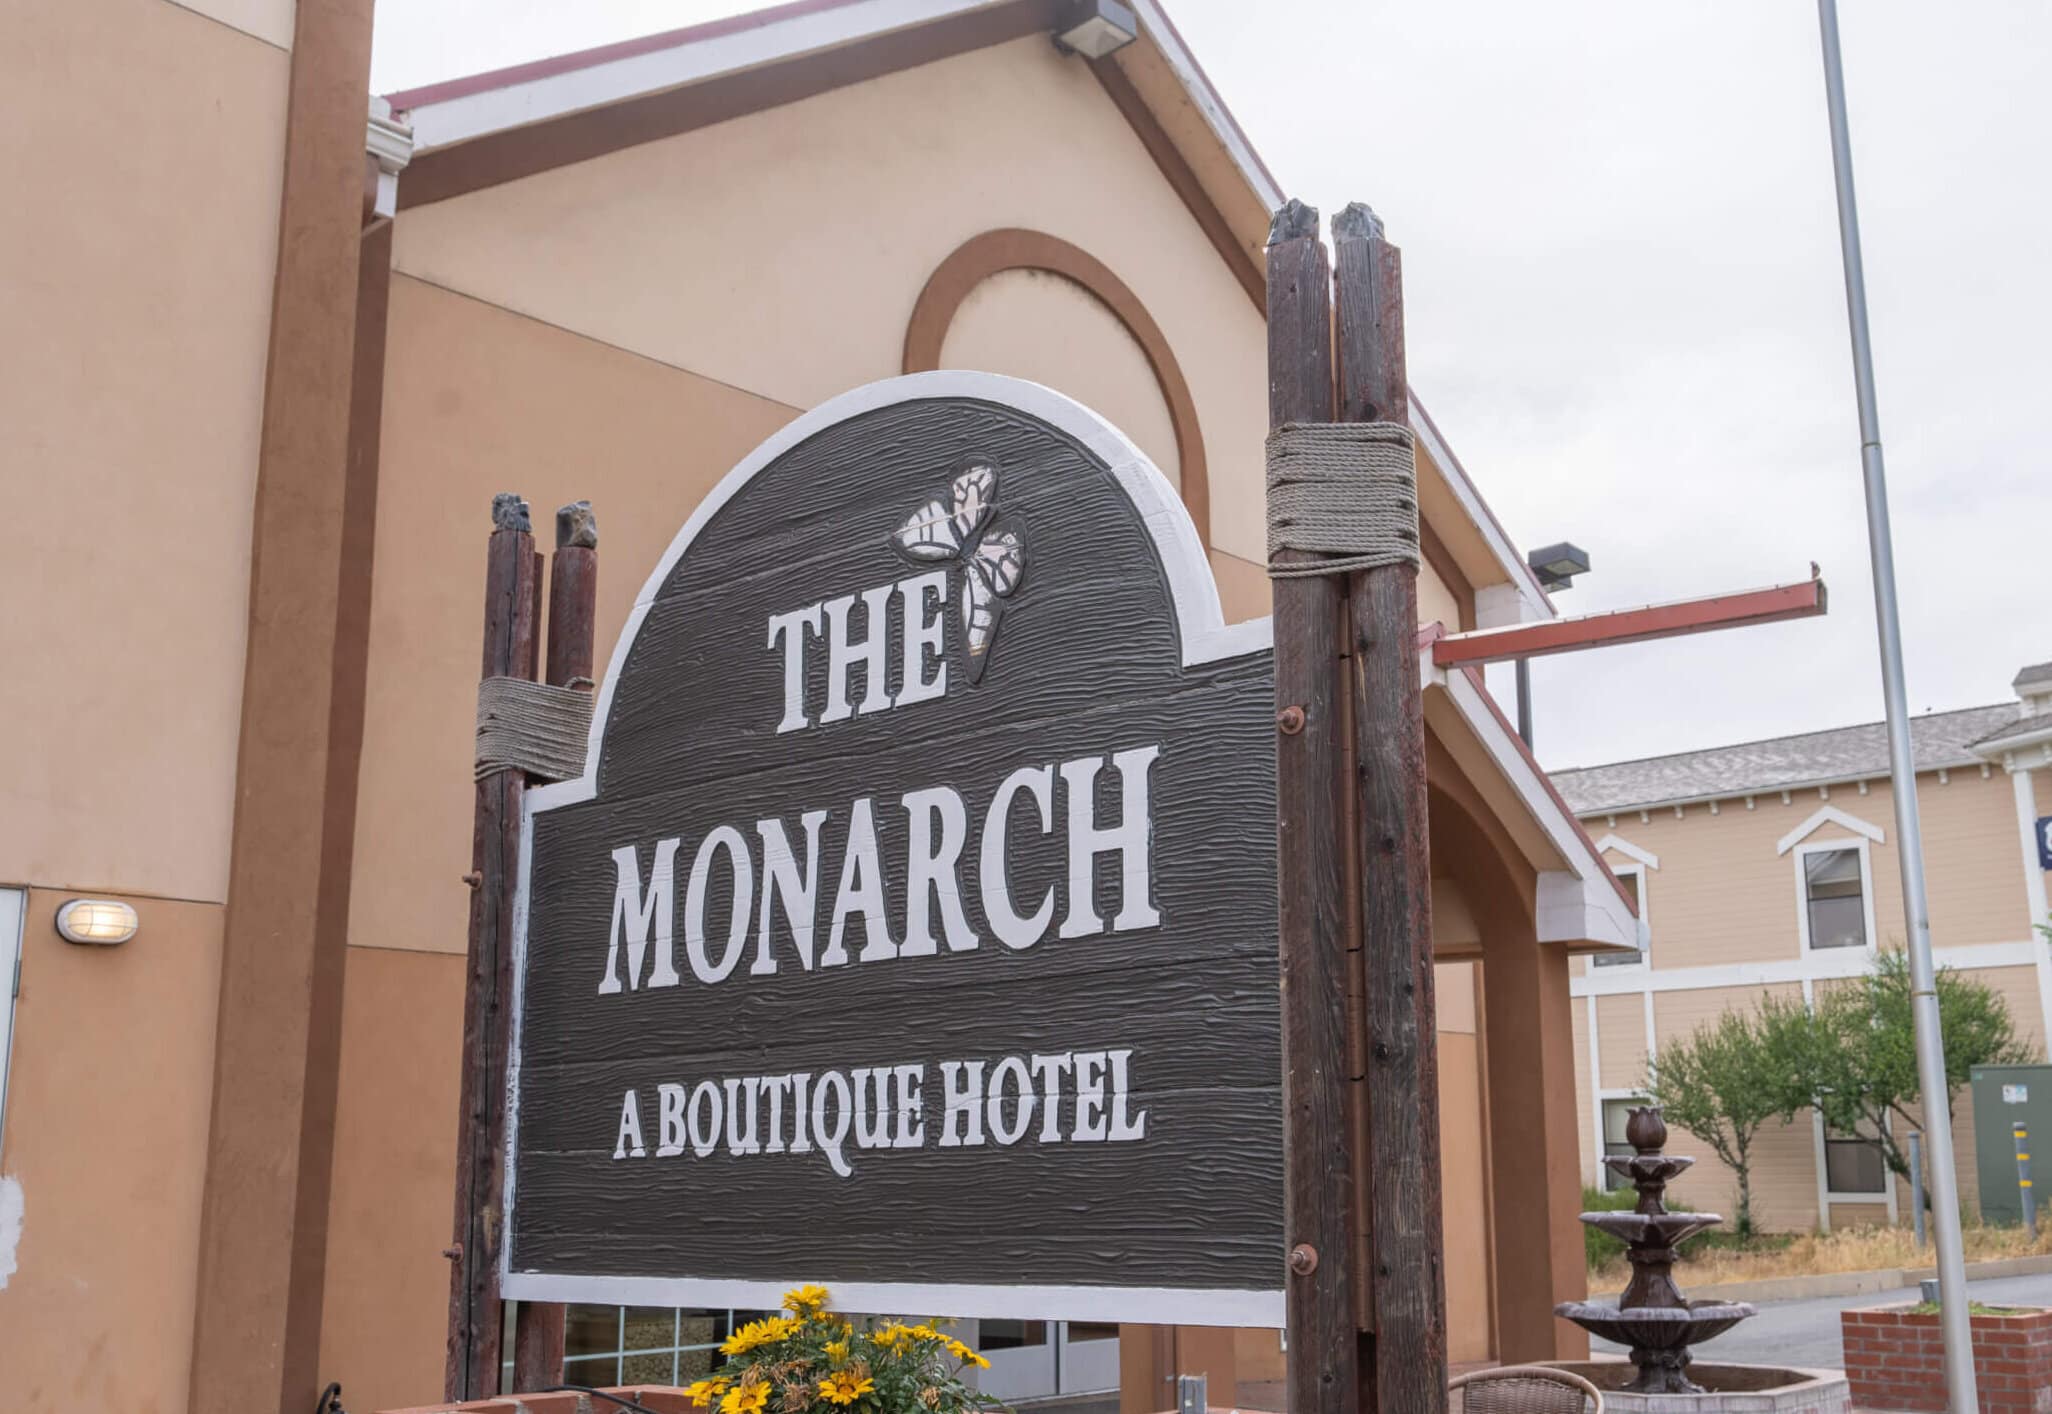 The Monarch Inn